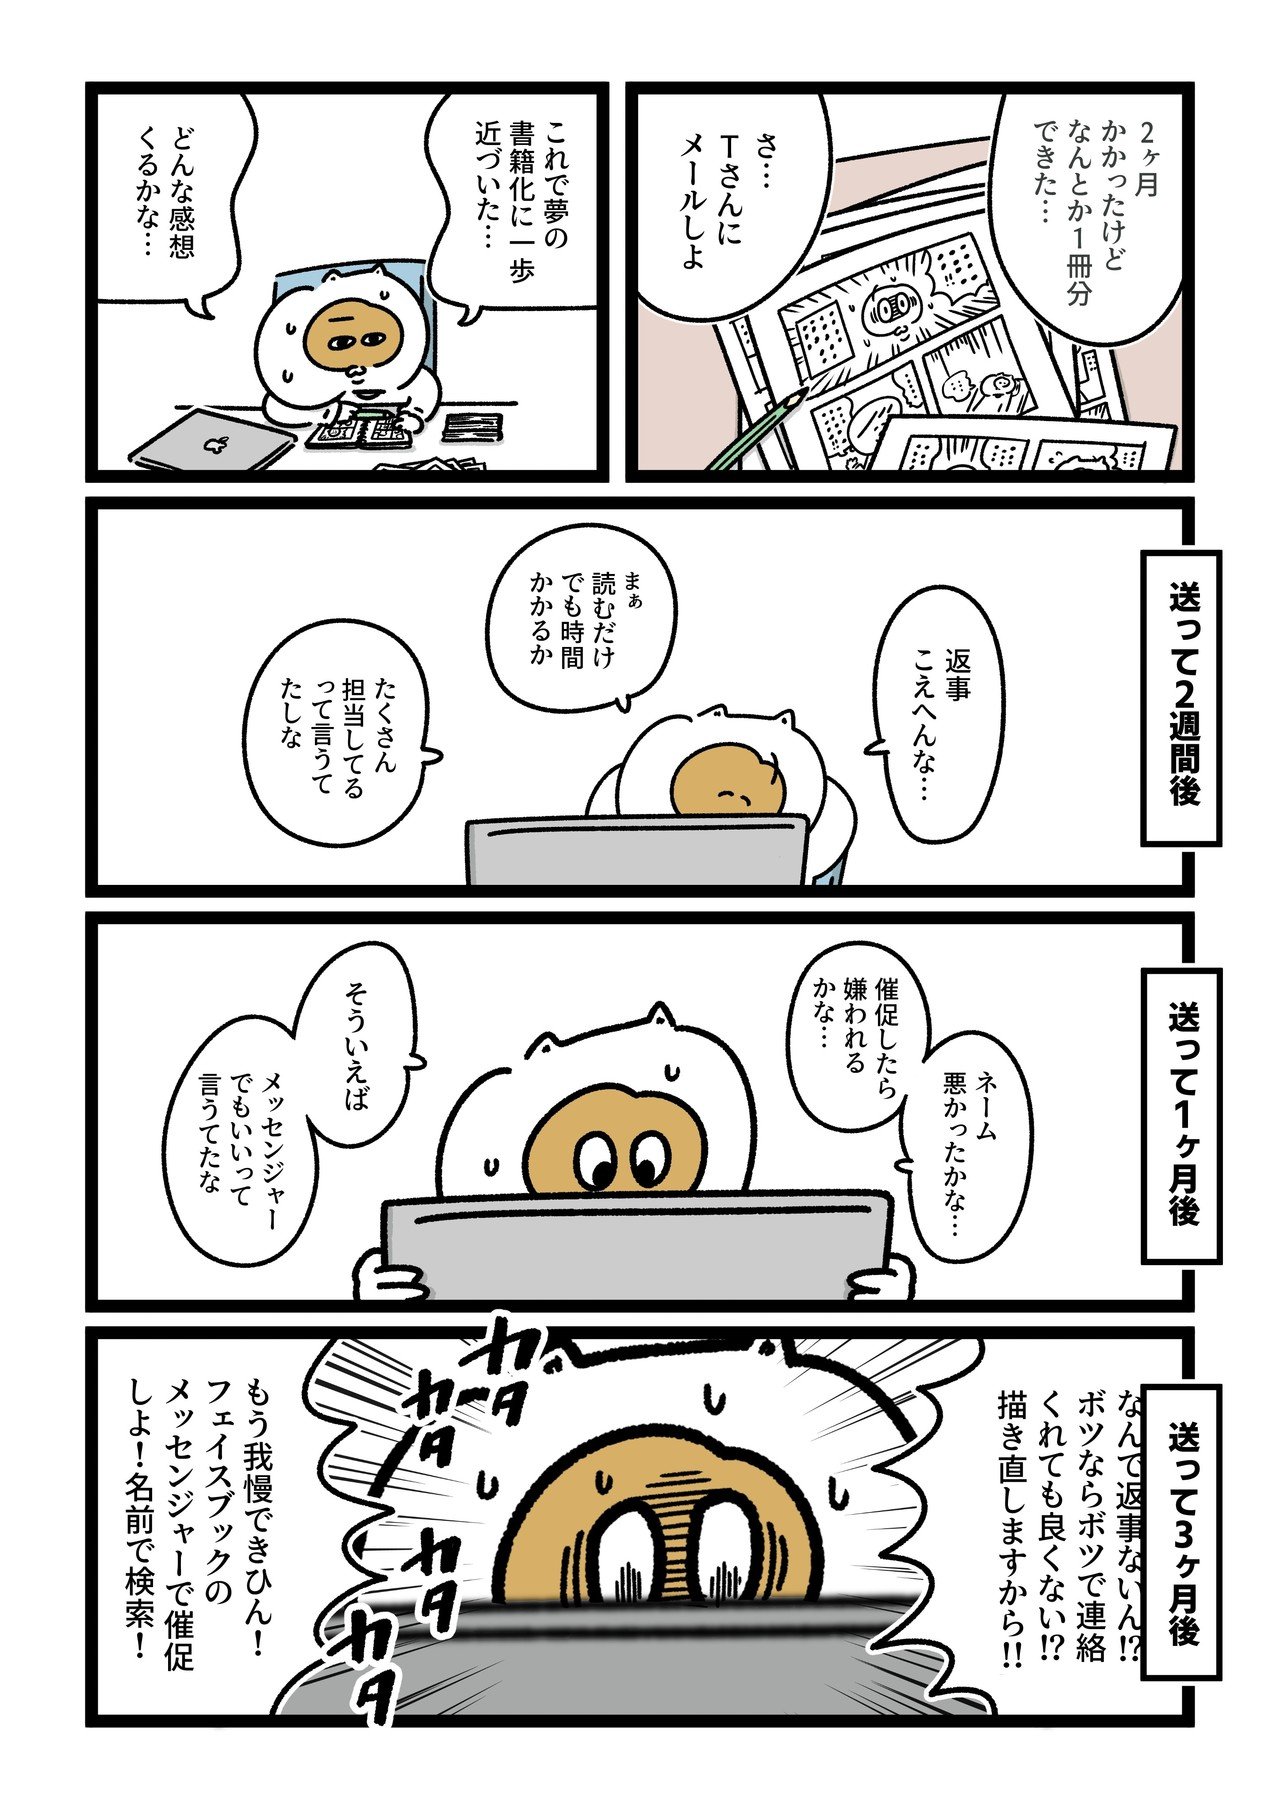 コミック28_出力_003